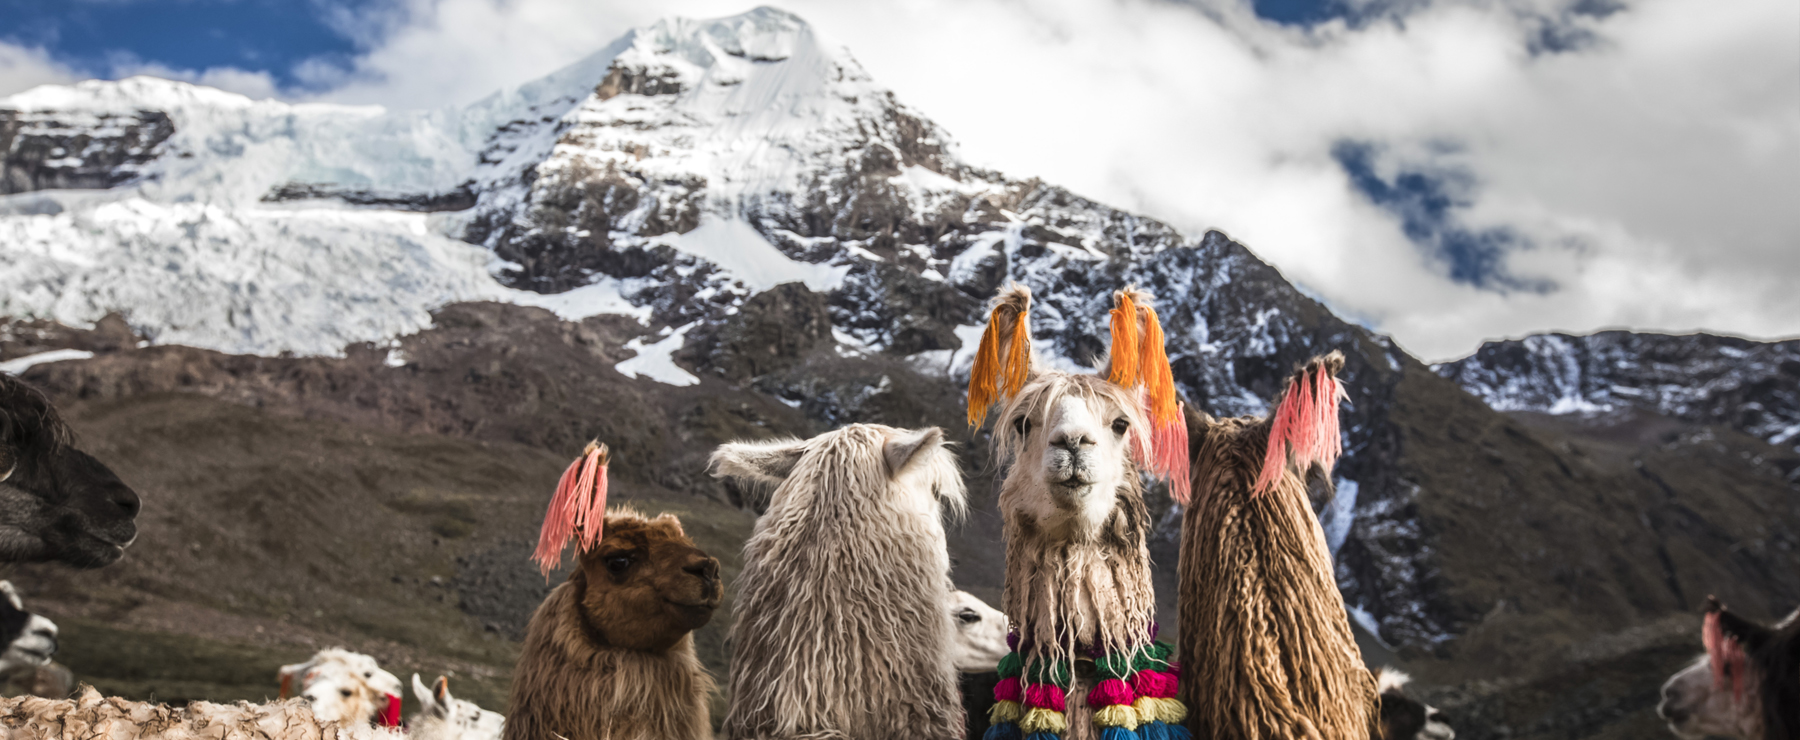 Llamas at Machuraccay, Ausangate Trek, Cusco - Atelier South America